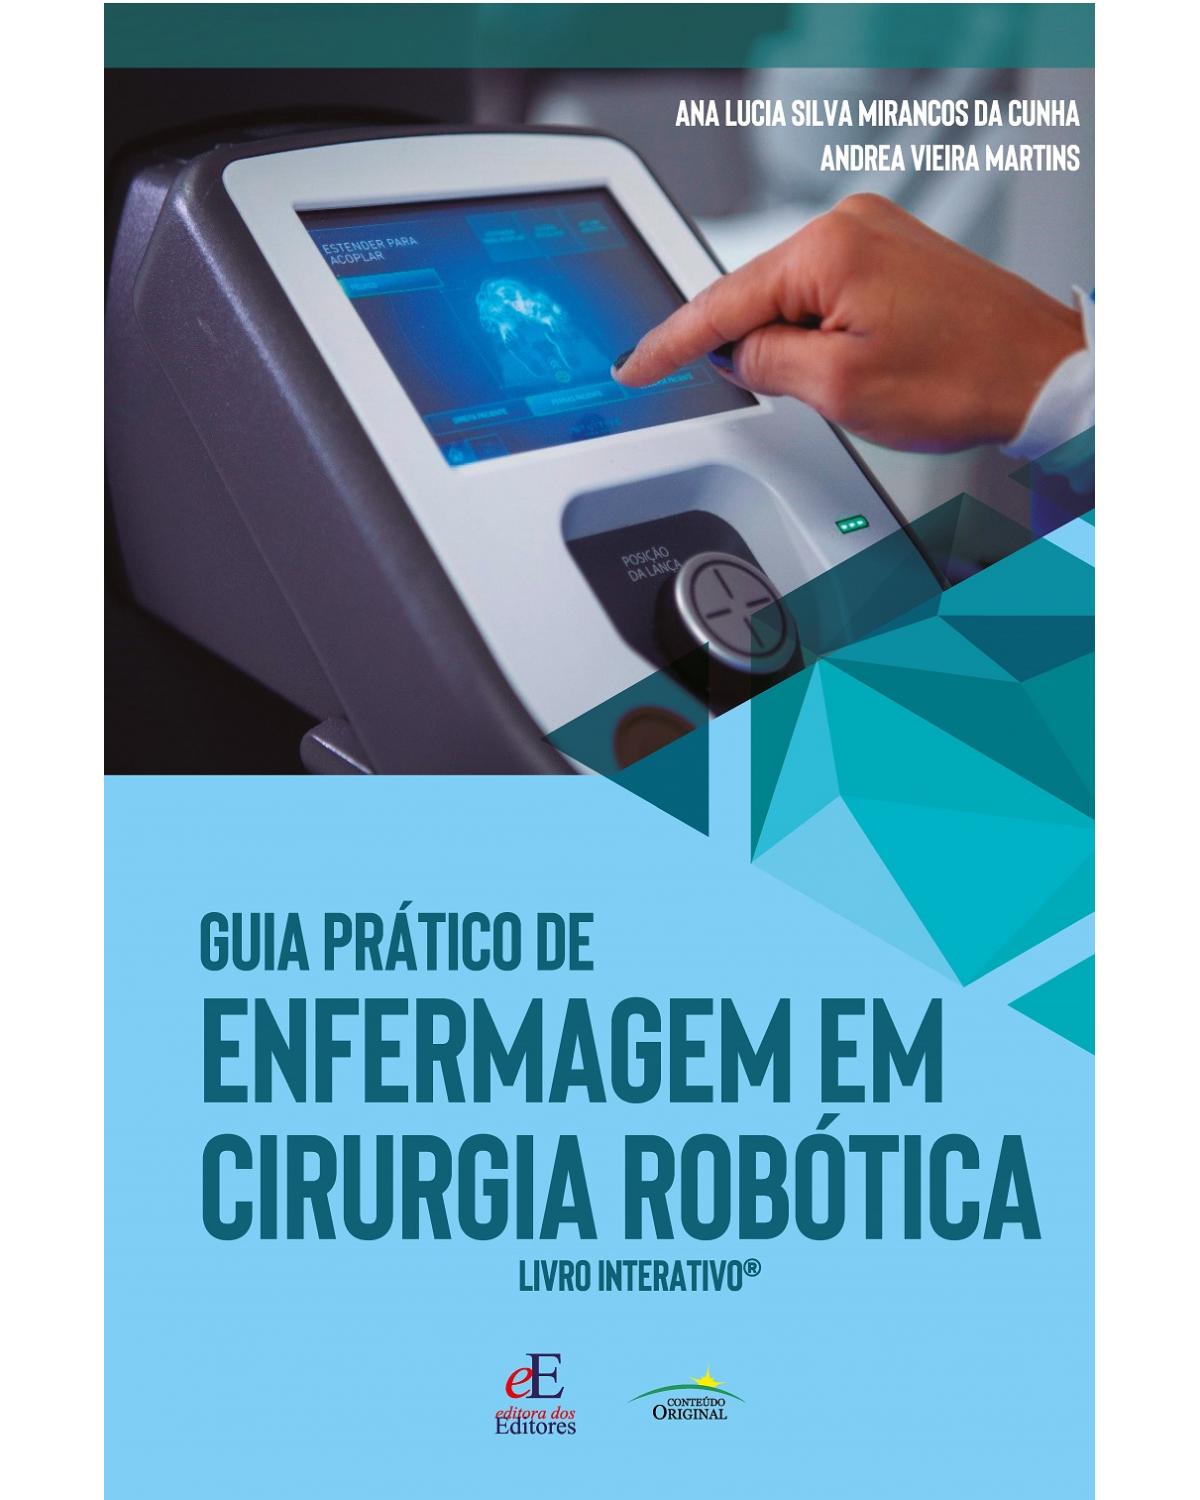 Guia prático de enfermagem em cirurgia robótica - Livro interativo | 2020